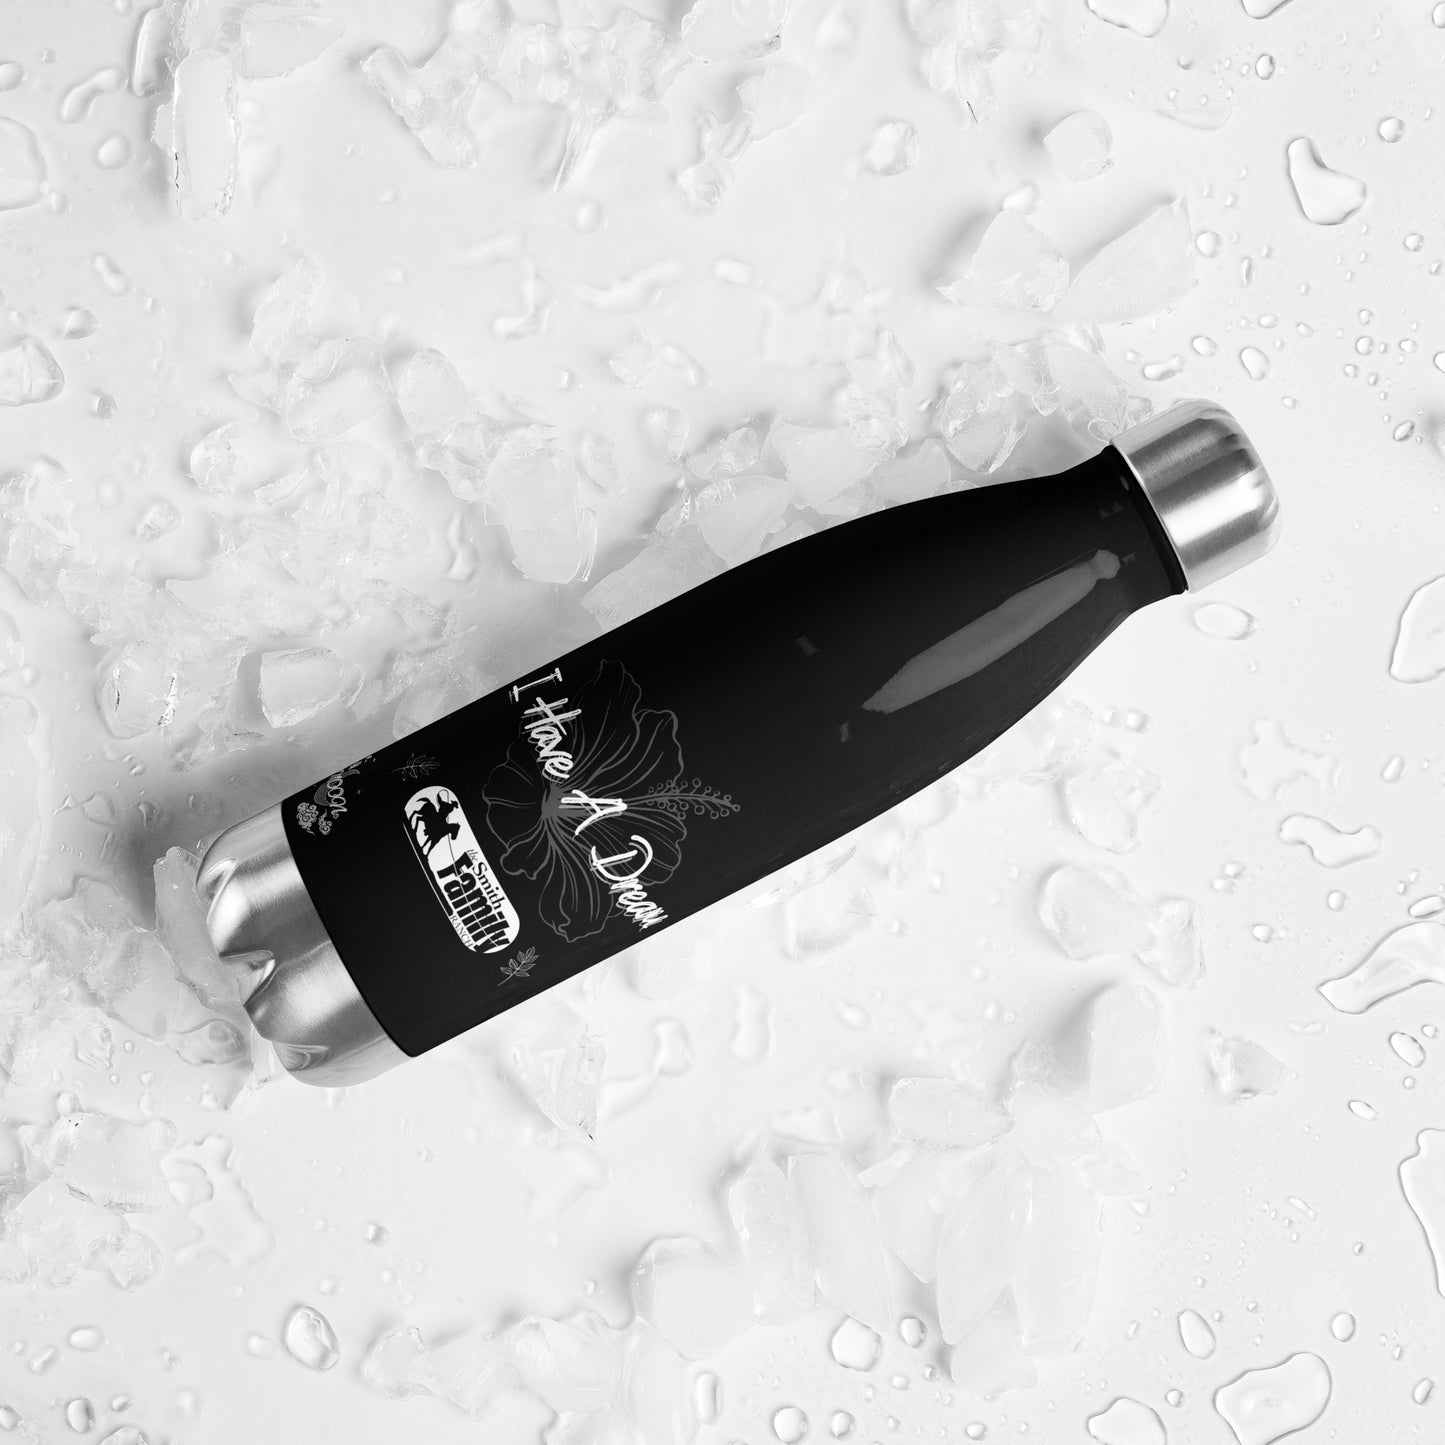 Stainless steel water bottle (Black & White Flower)